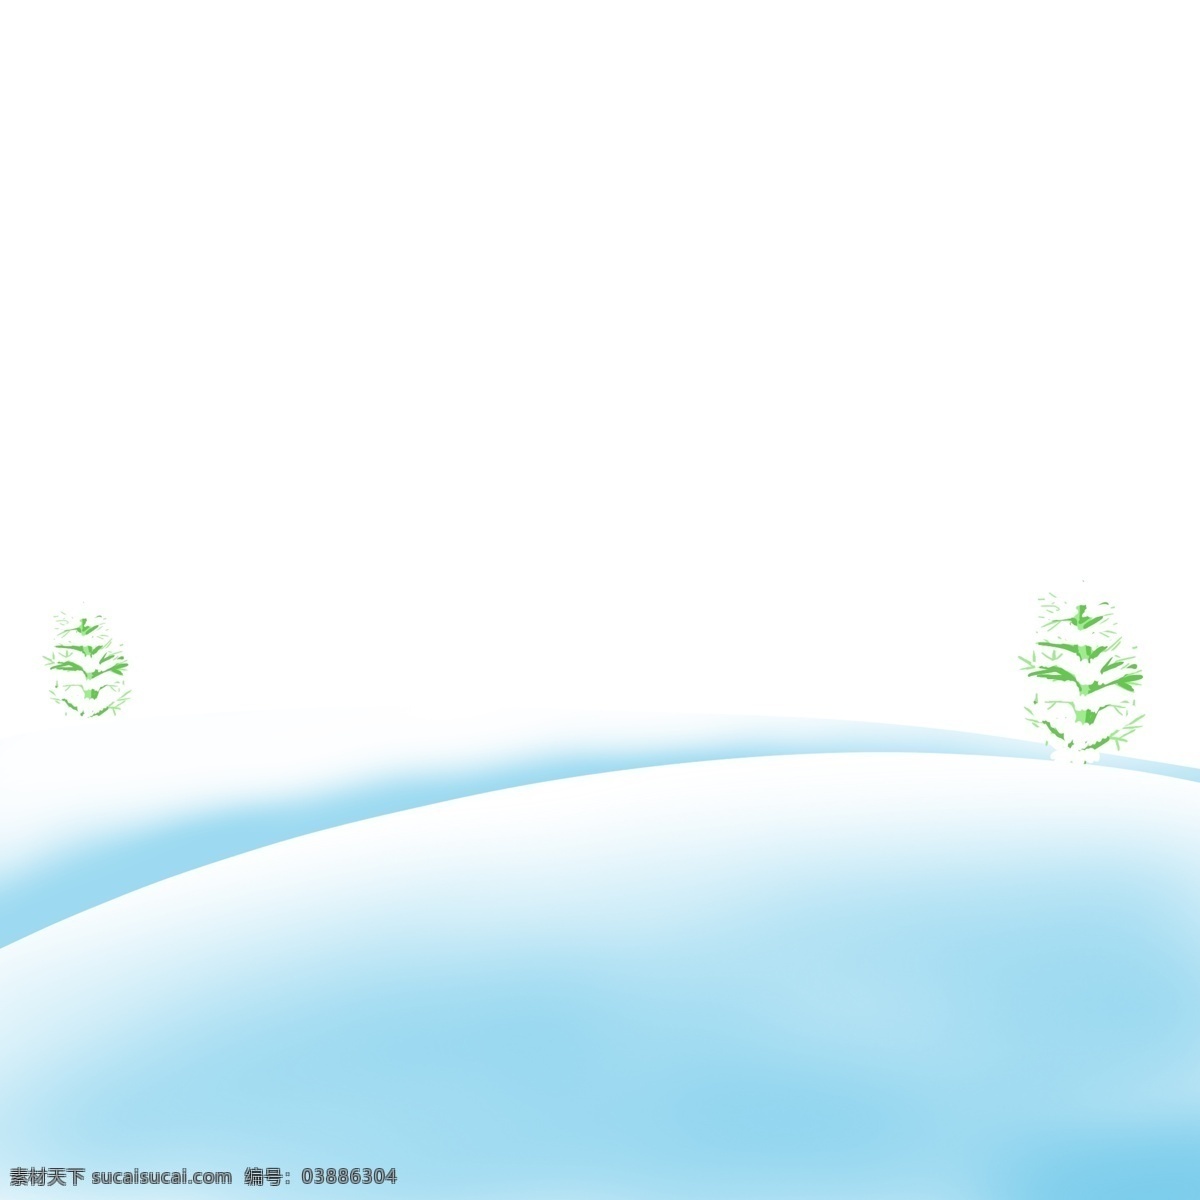 冬天 雪地 上 常青树 枝繁叶茂 绿色白色 简约 落 满 积雪 树叶 冬天的长青树 白雪 漫漫 地面